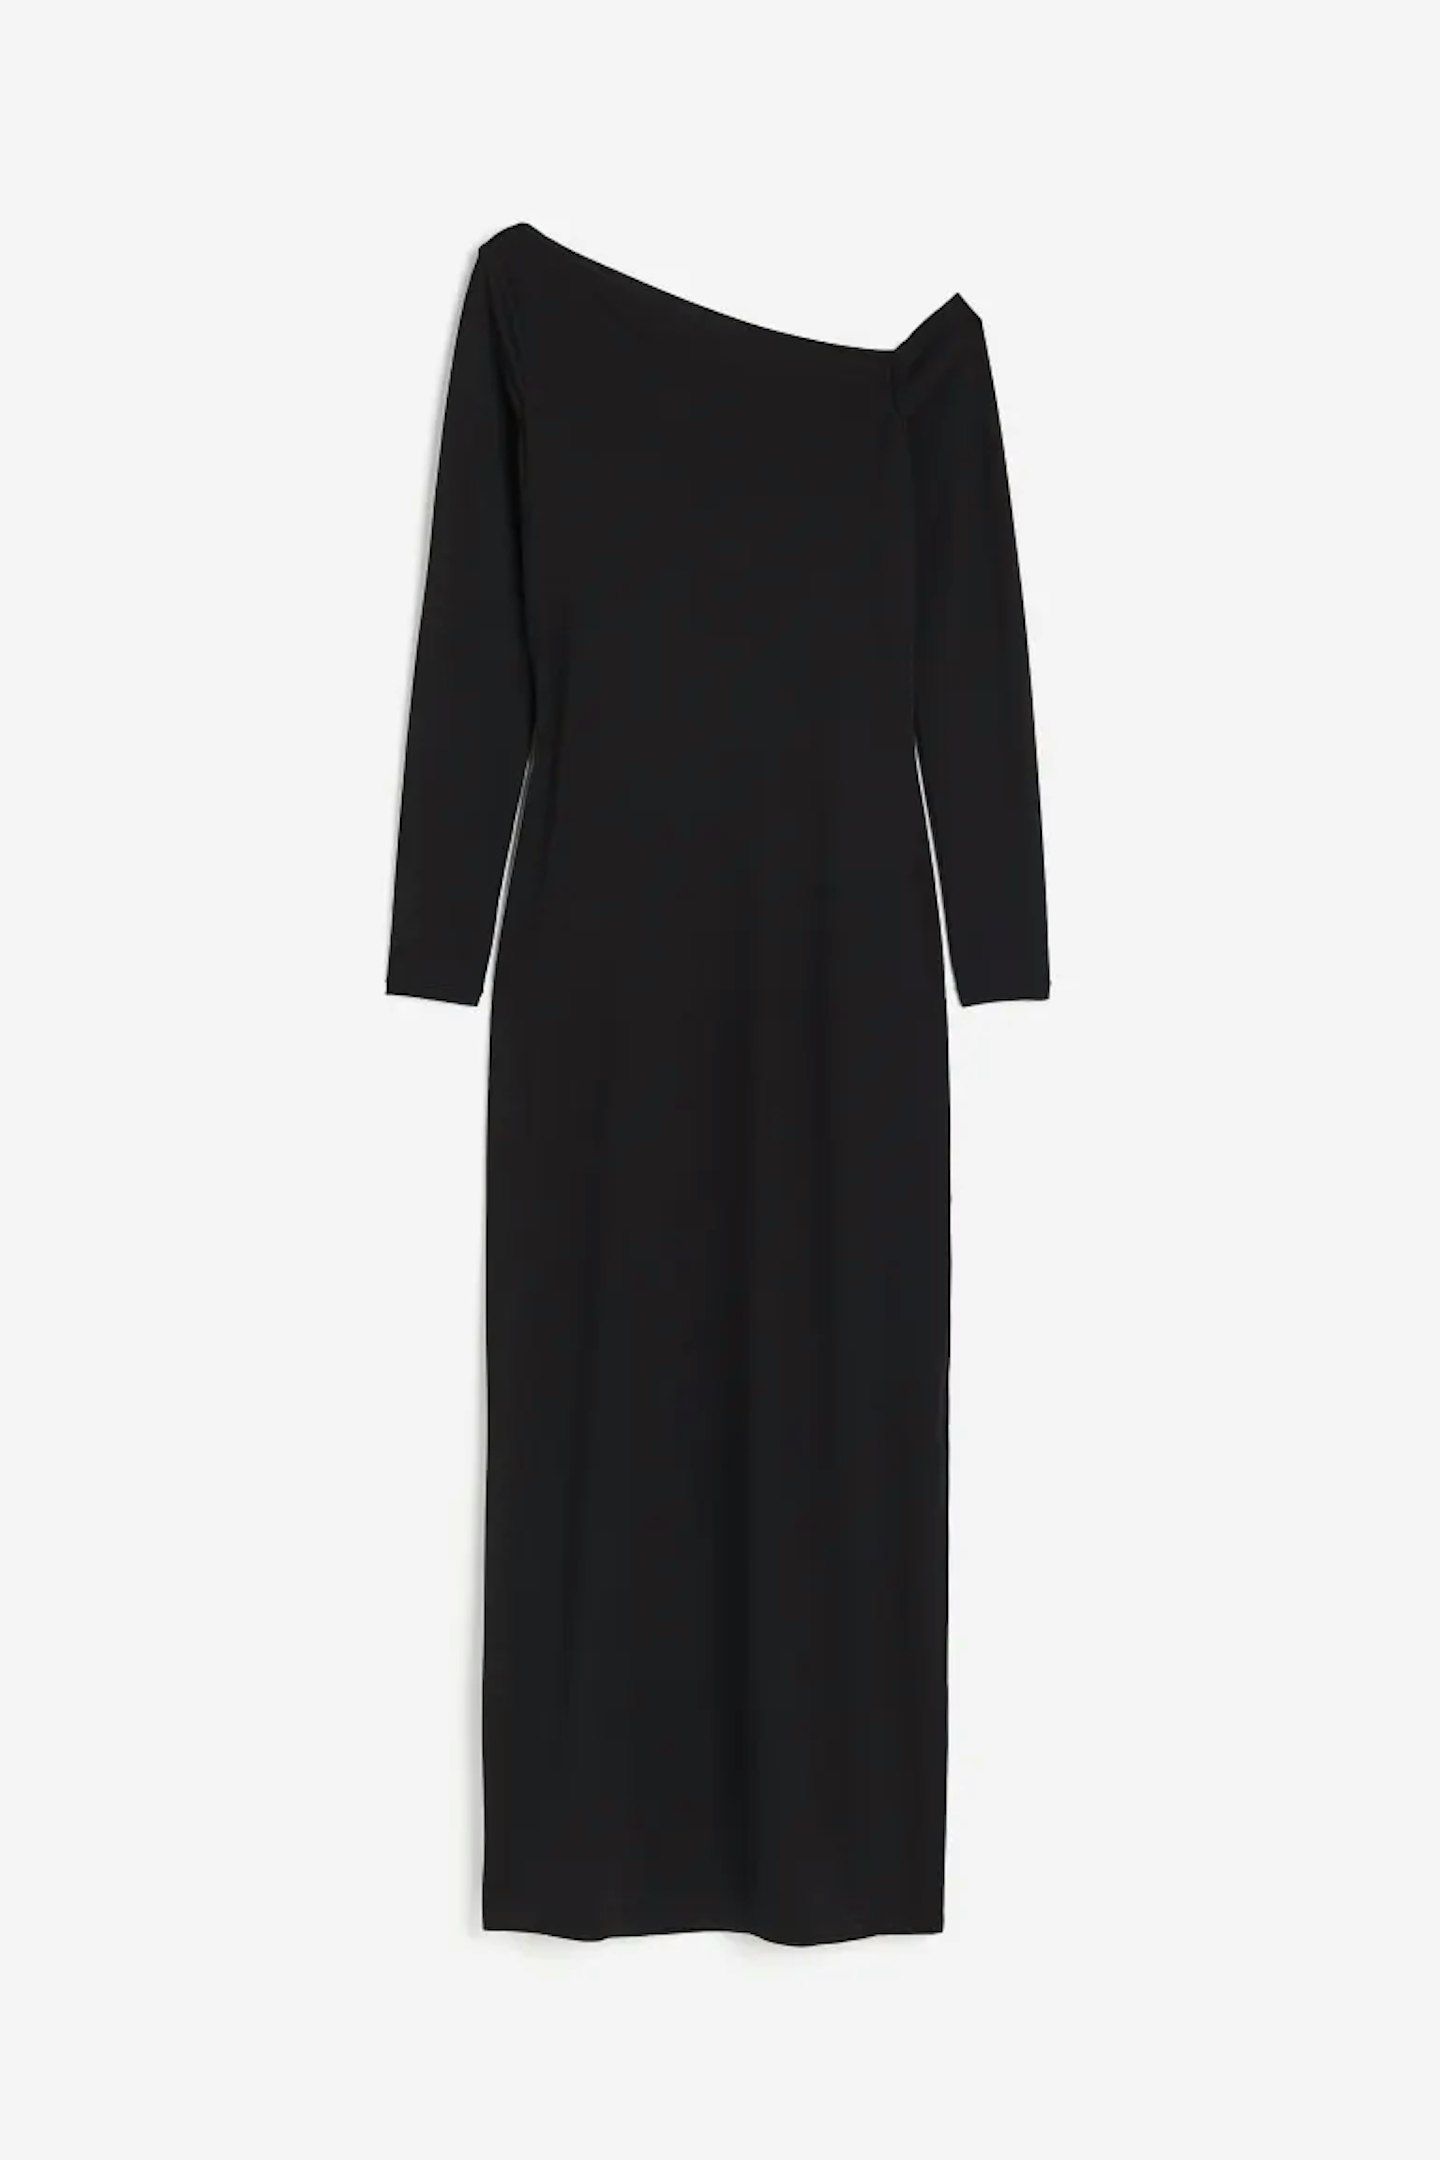 H&M, One-Shoulder Dress